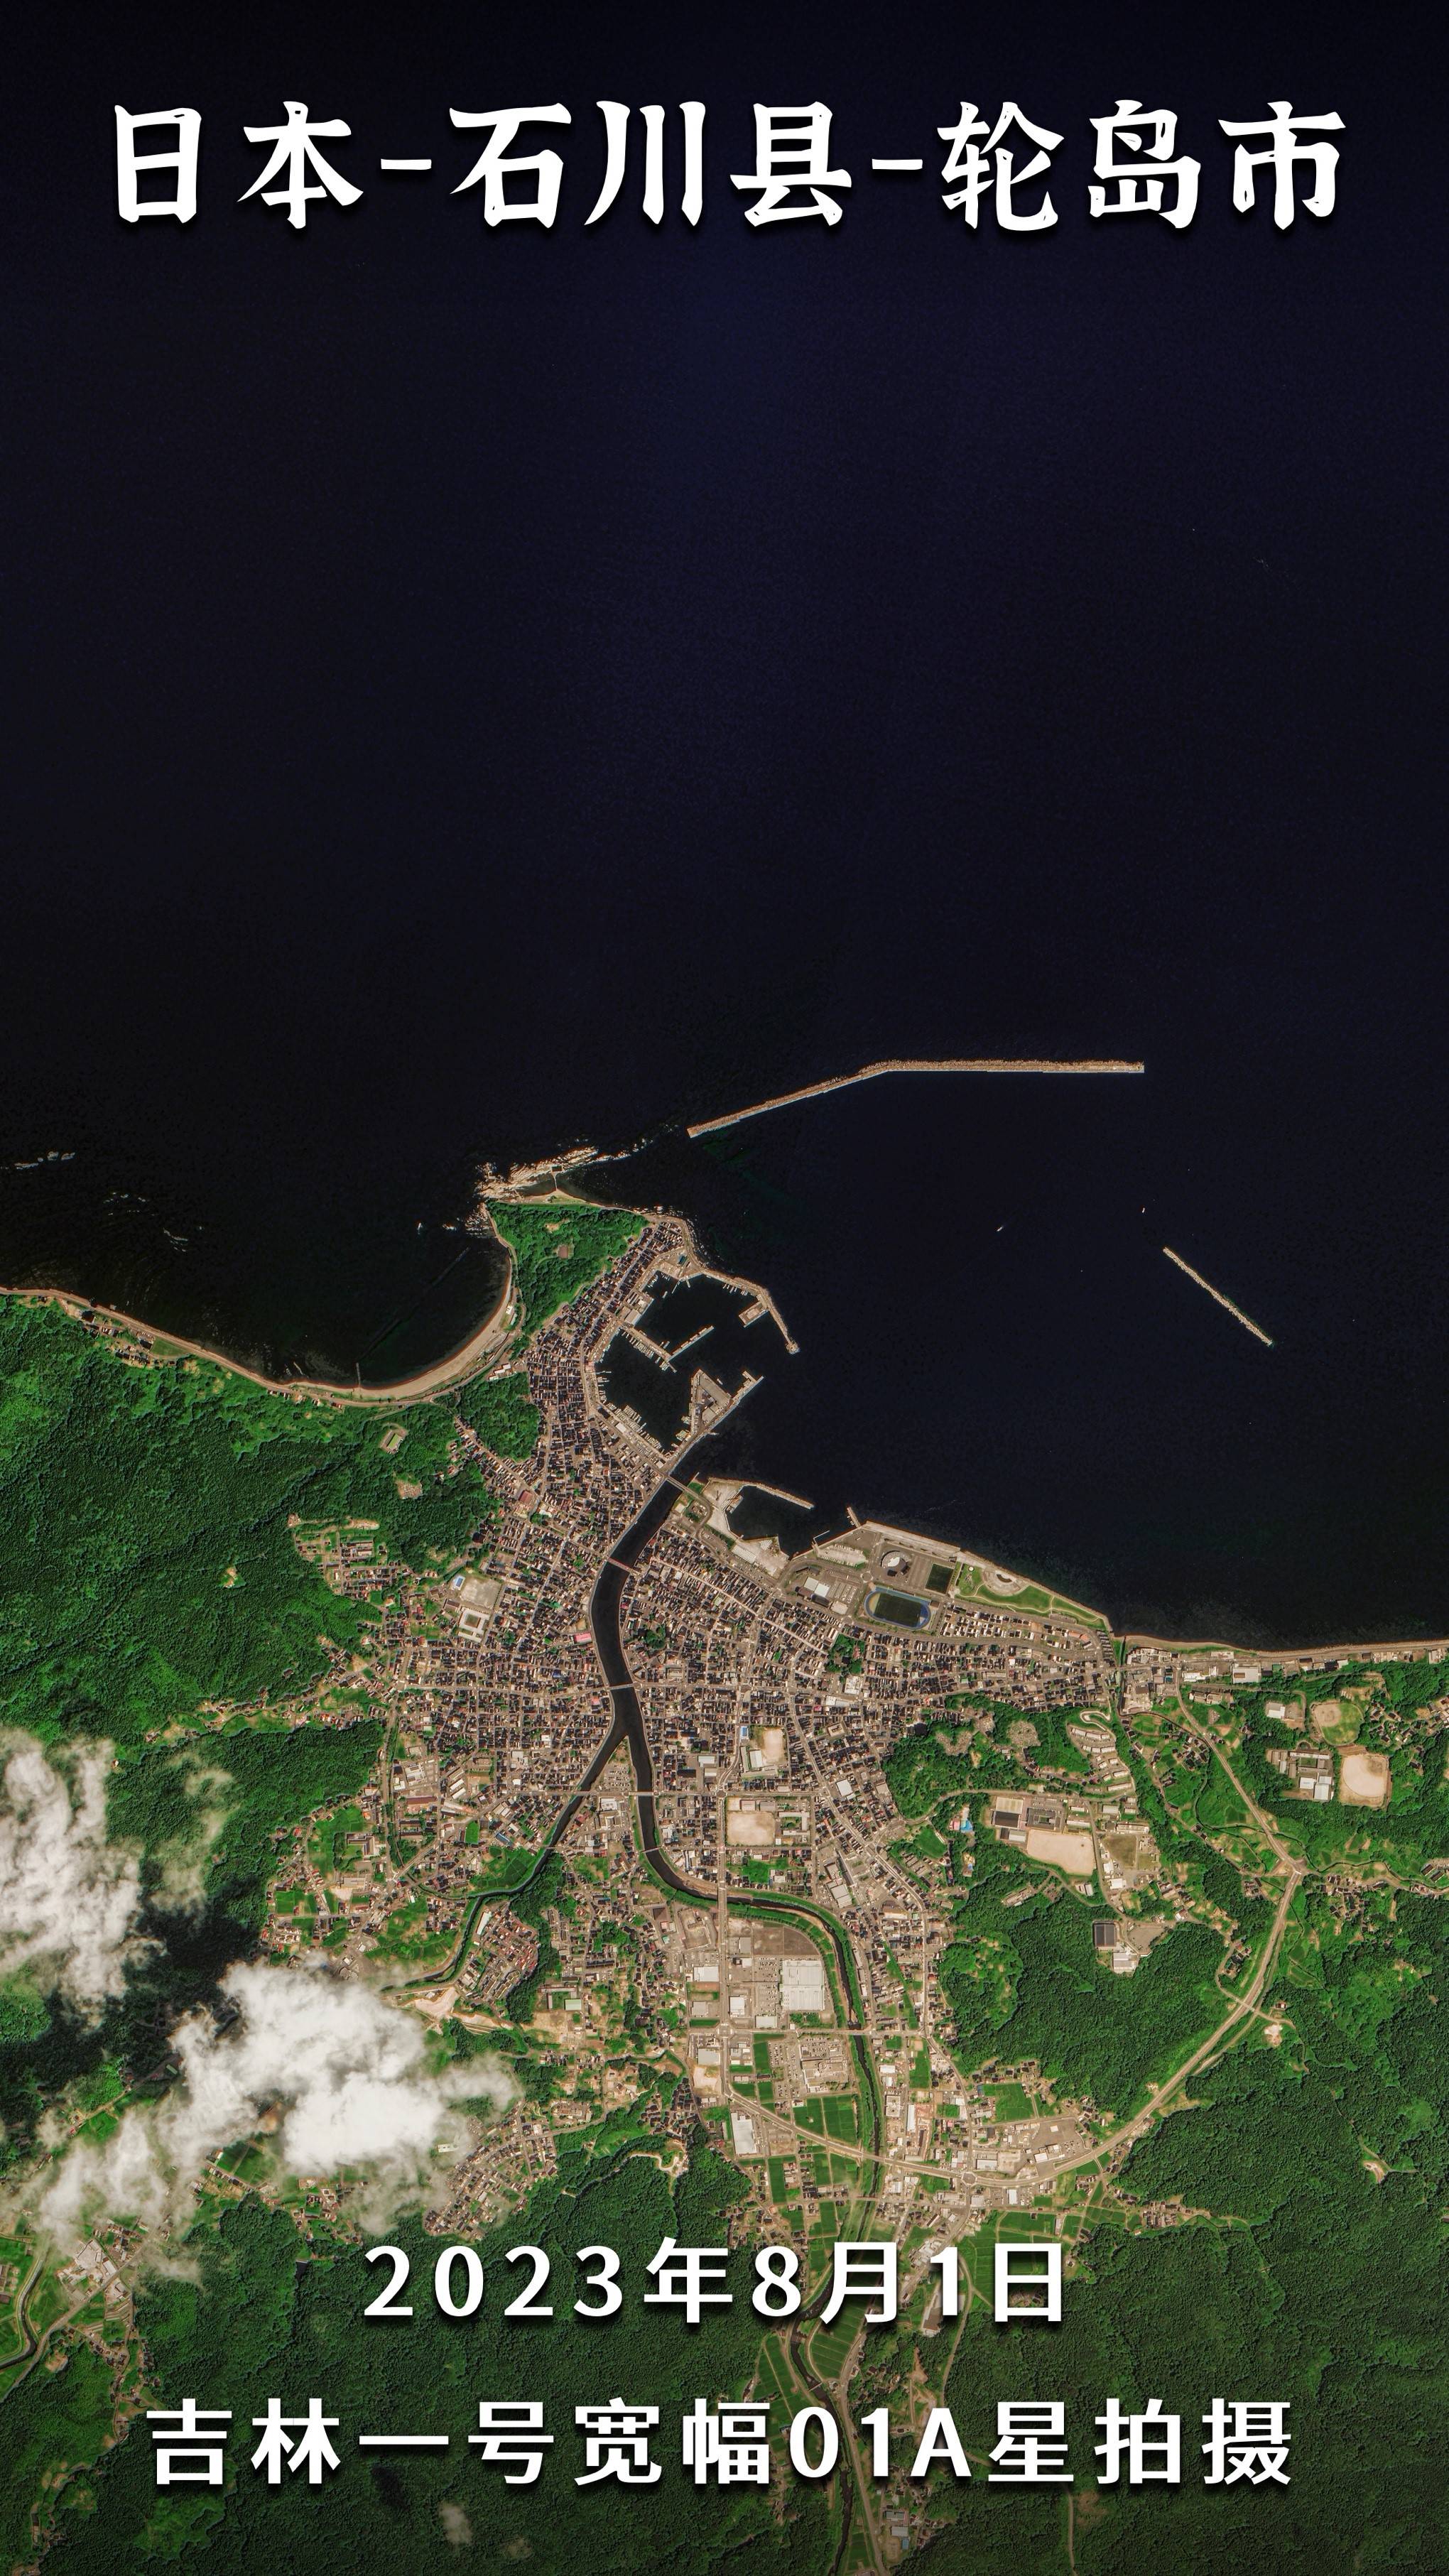 日本将能登半岛地震定义为“极严重灾害” 中国卫星发布灾后卫星影像